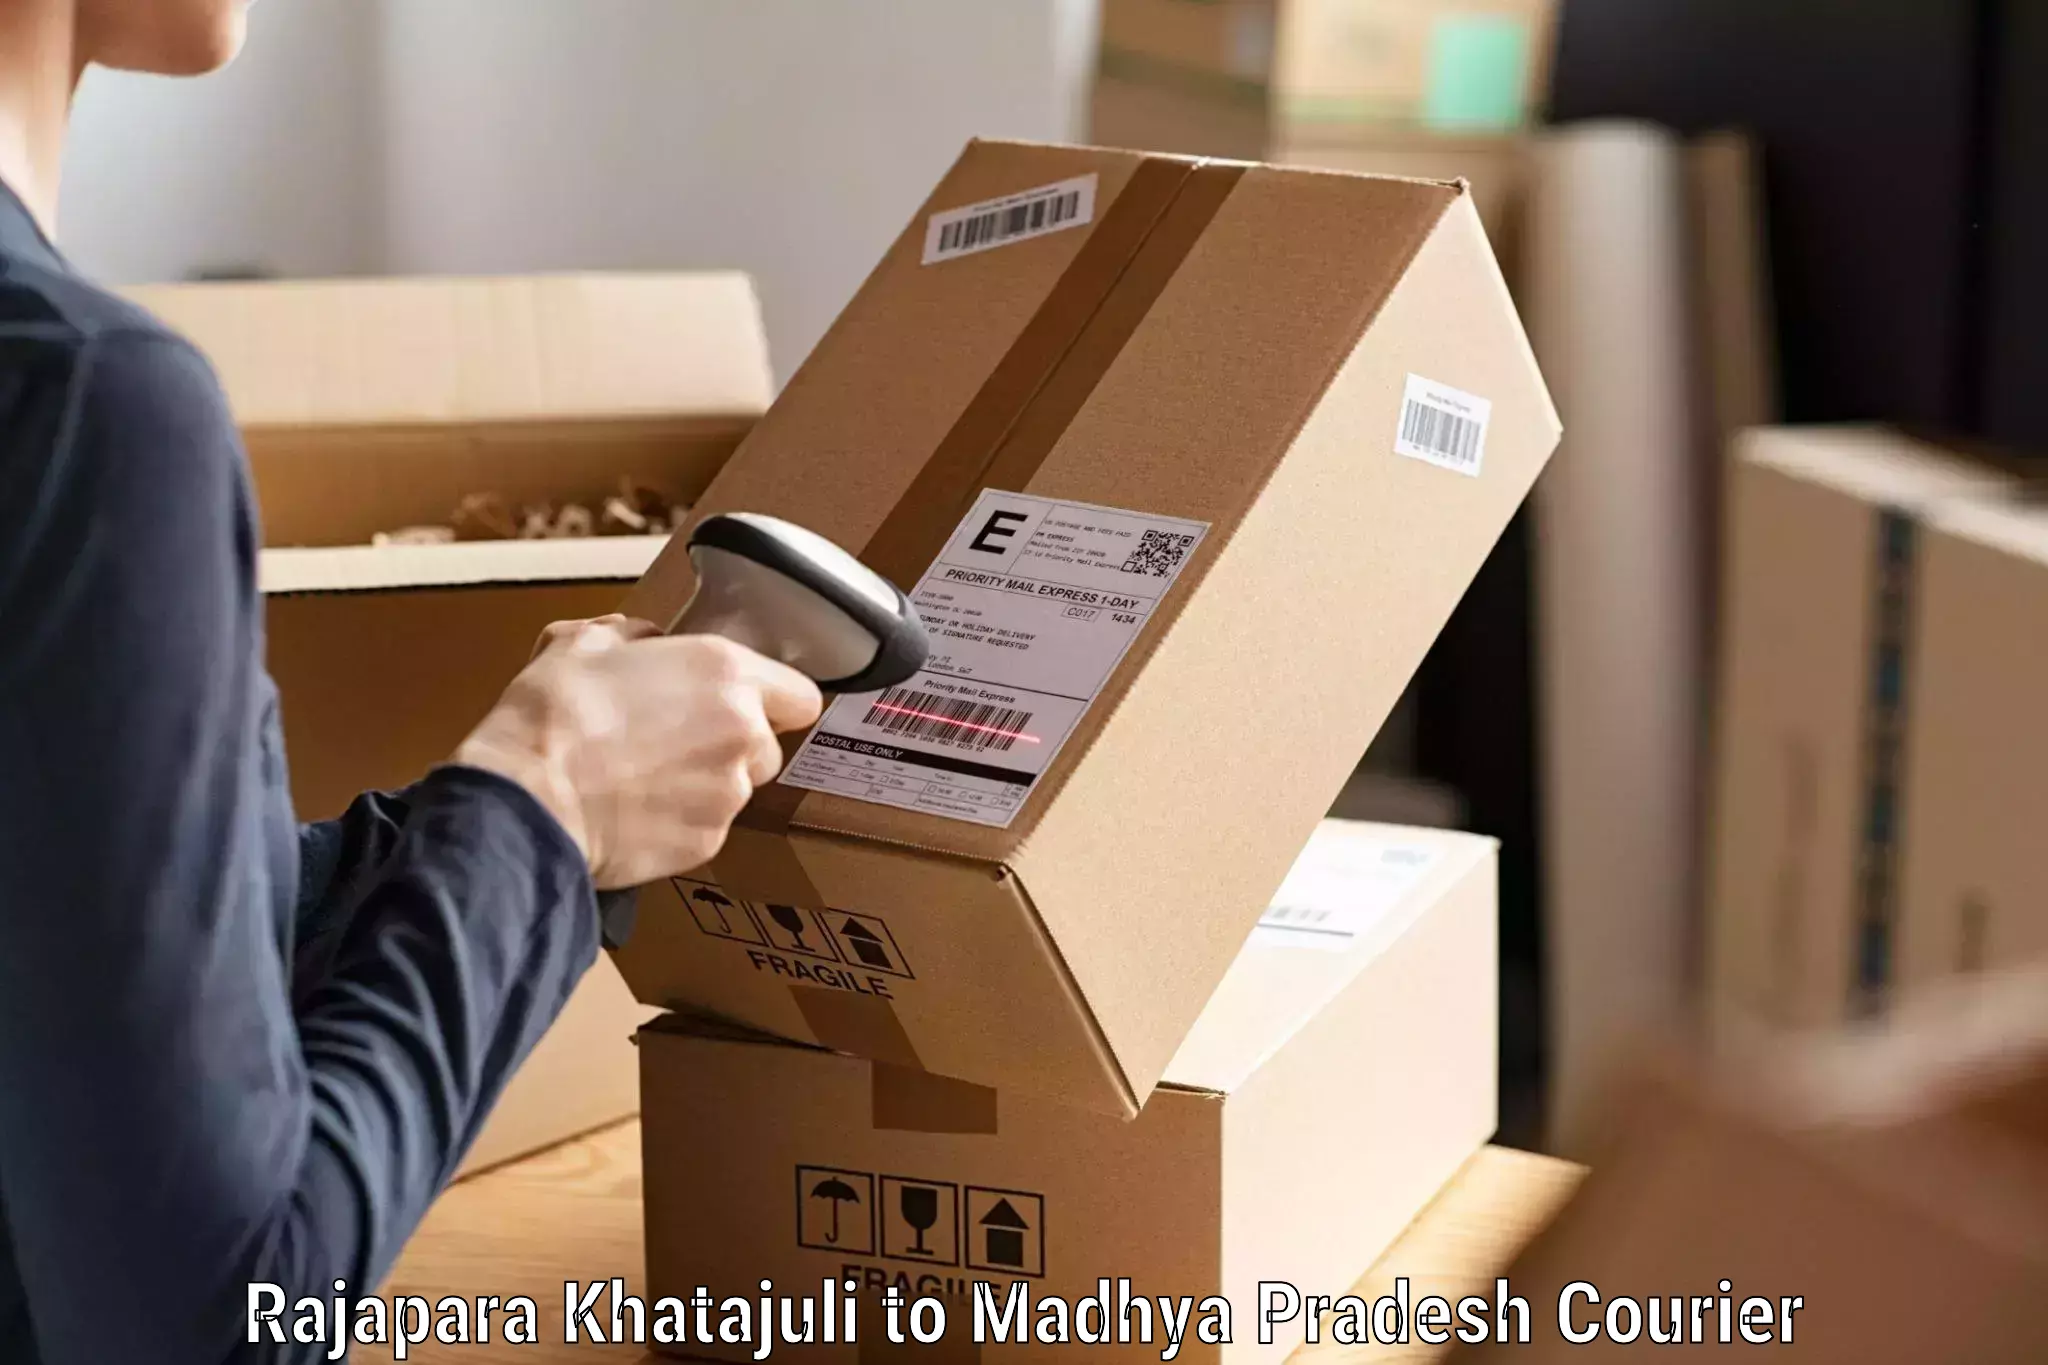 Courier service comparison Rajapara Khatajuli to West Nimar